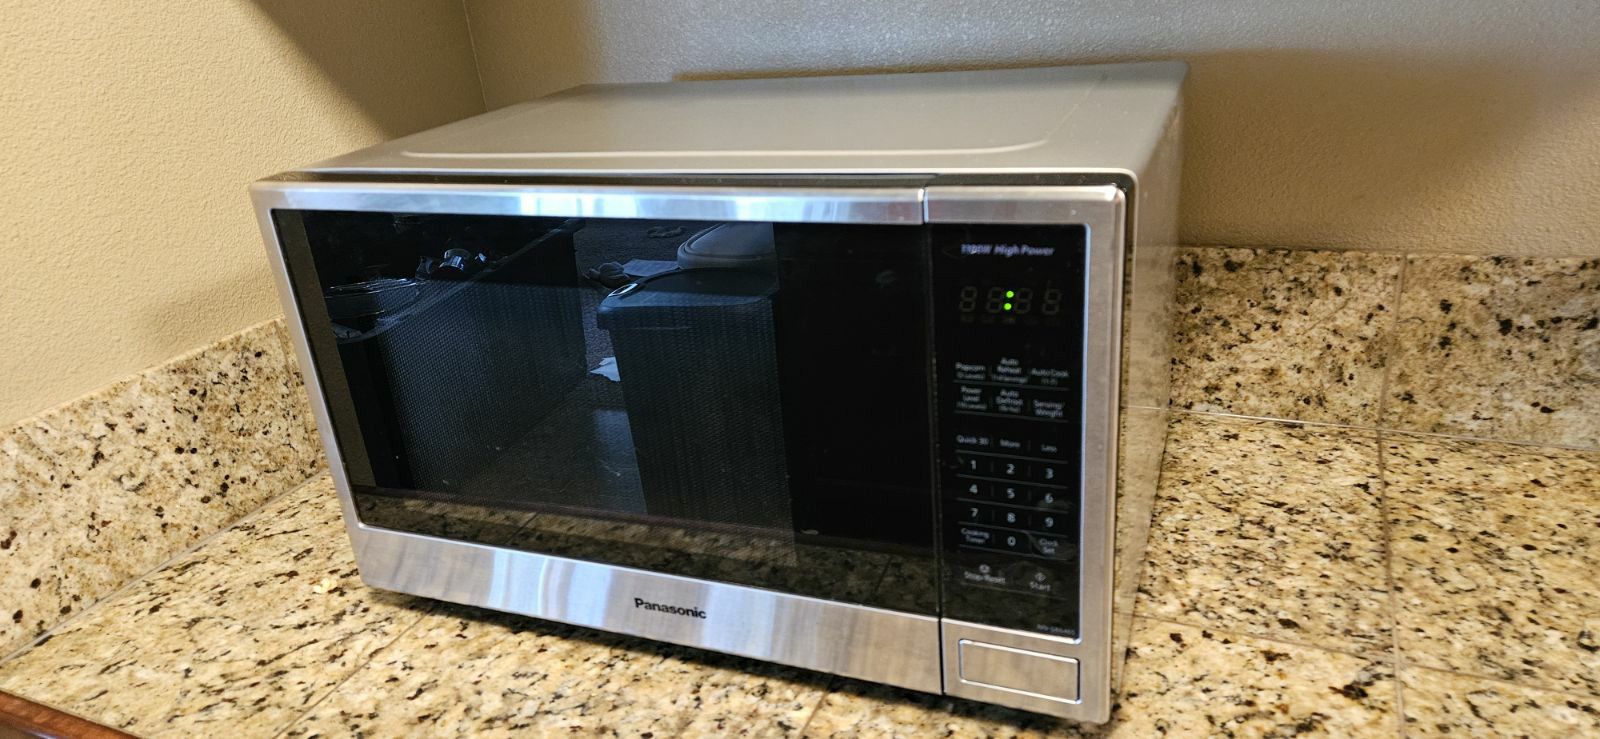 Panasonic Microwave $30